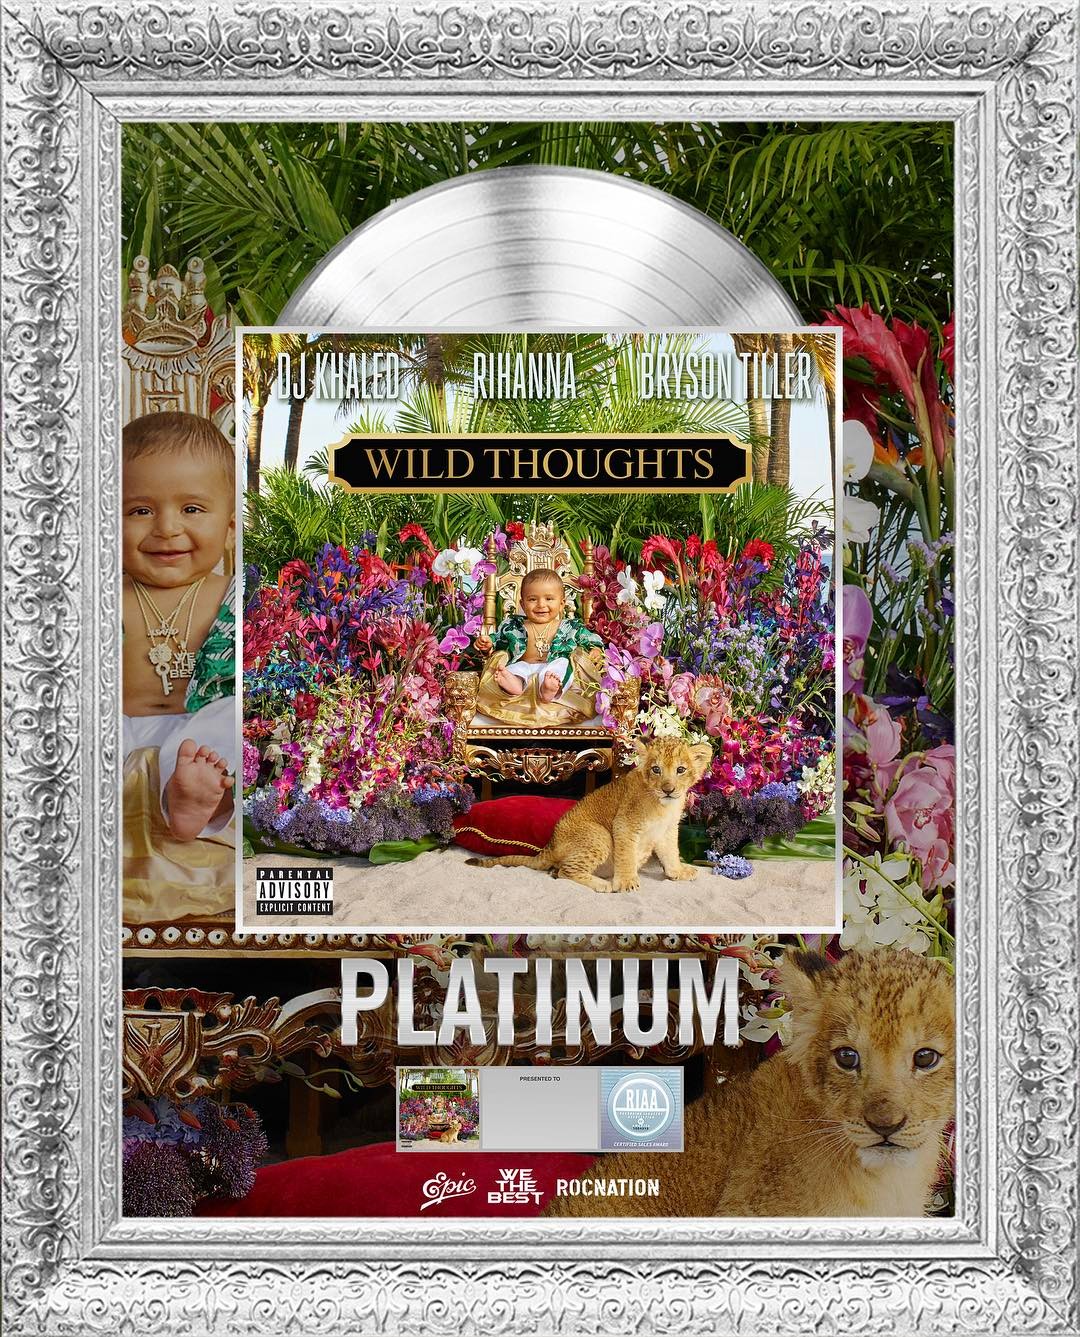 BellaNaija - DJ Khaled Hit Song "Wild Thoughts" featuring Rihanna & Bryson Tiller certified Platinum